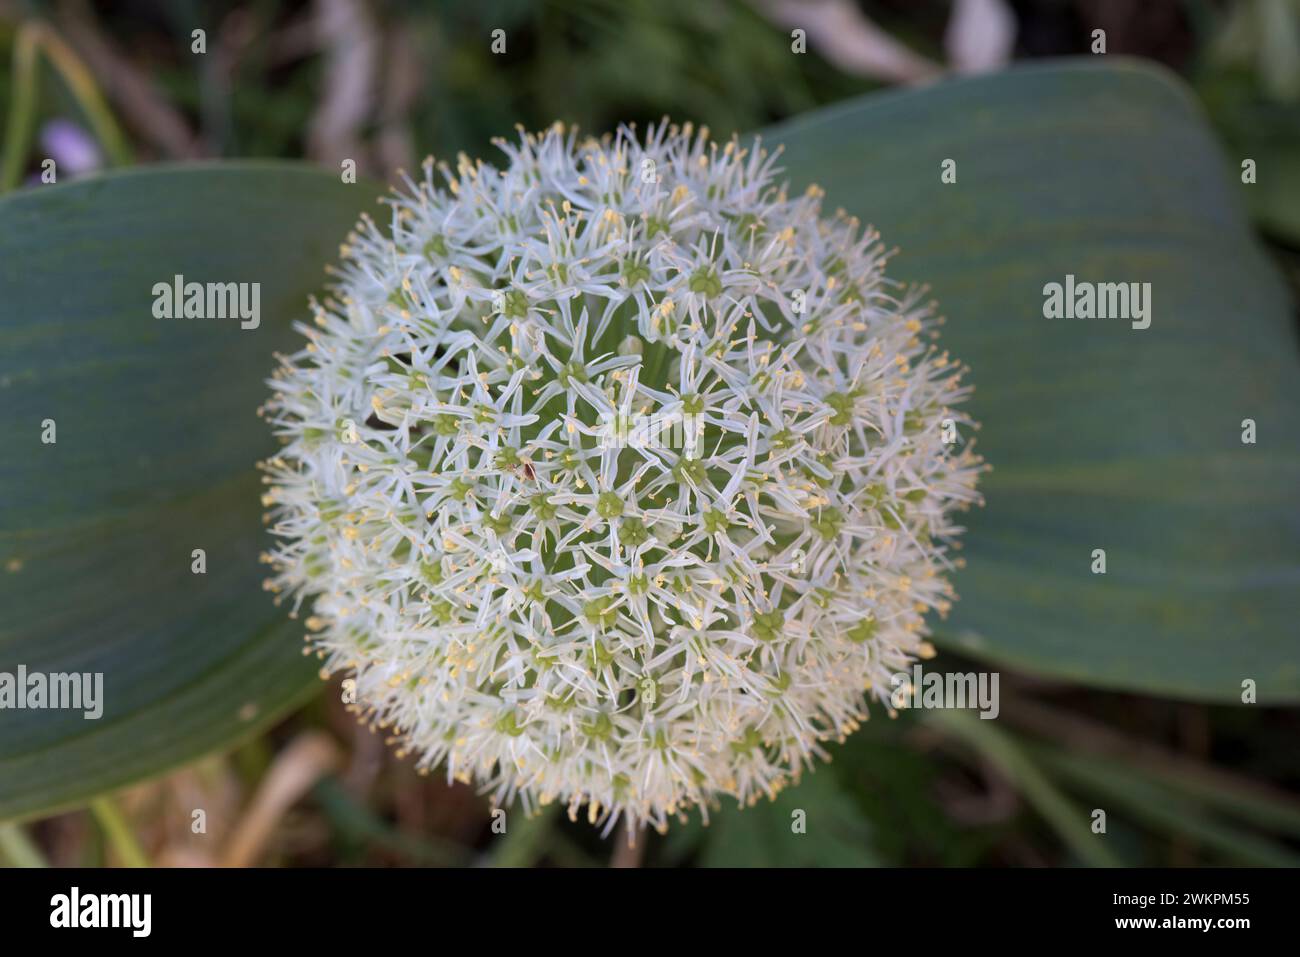 Testa sferica di fiori di ombelico bianco sferica a cipolla del Turkistan o ornamentale (Allium karataviense) su un gambo corto con due ampie foglie grigio-verdi. Foto Stock